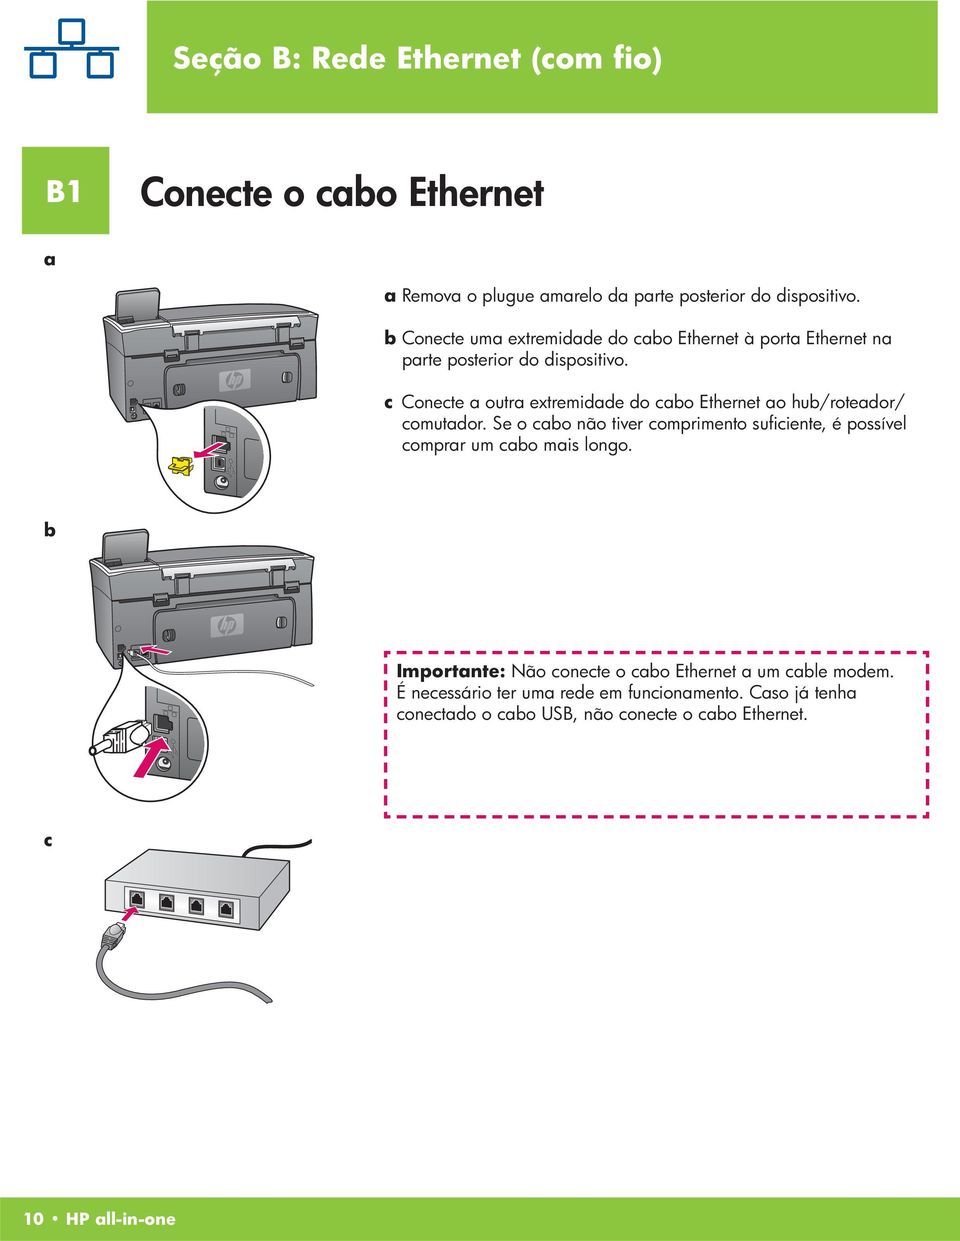 c Conecte a outra extremidade do cabo Ethernet ao hub/roteador/ comutador.